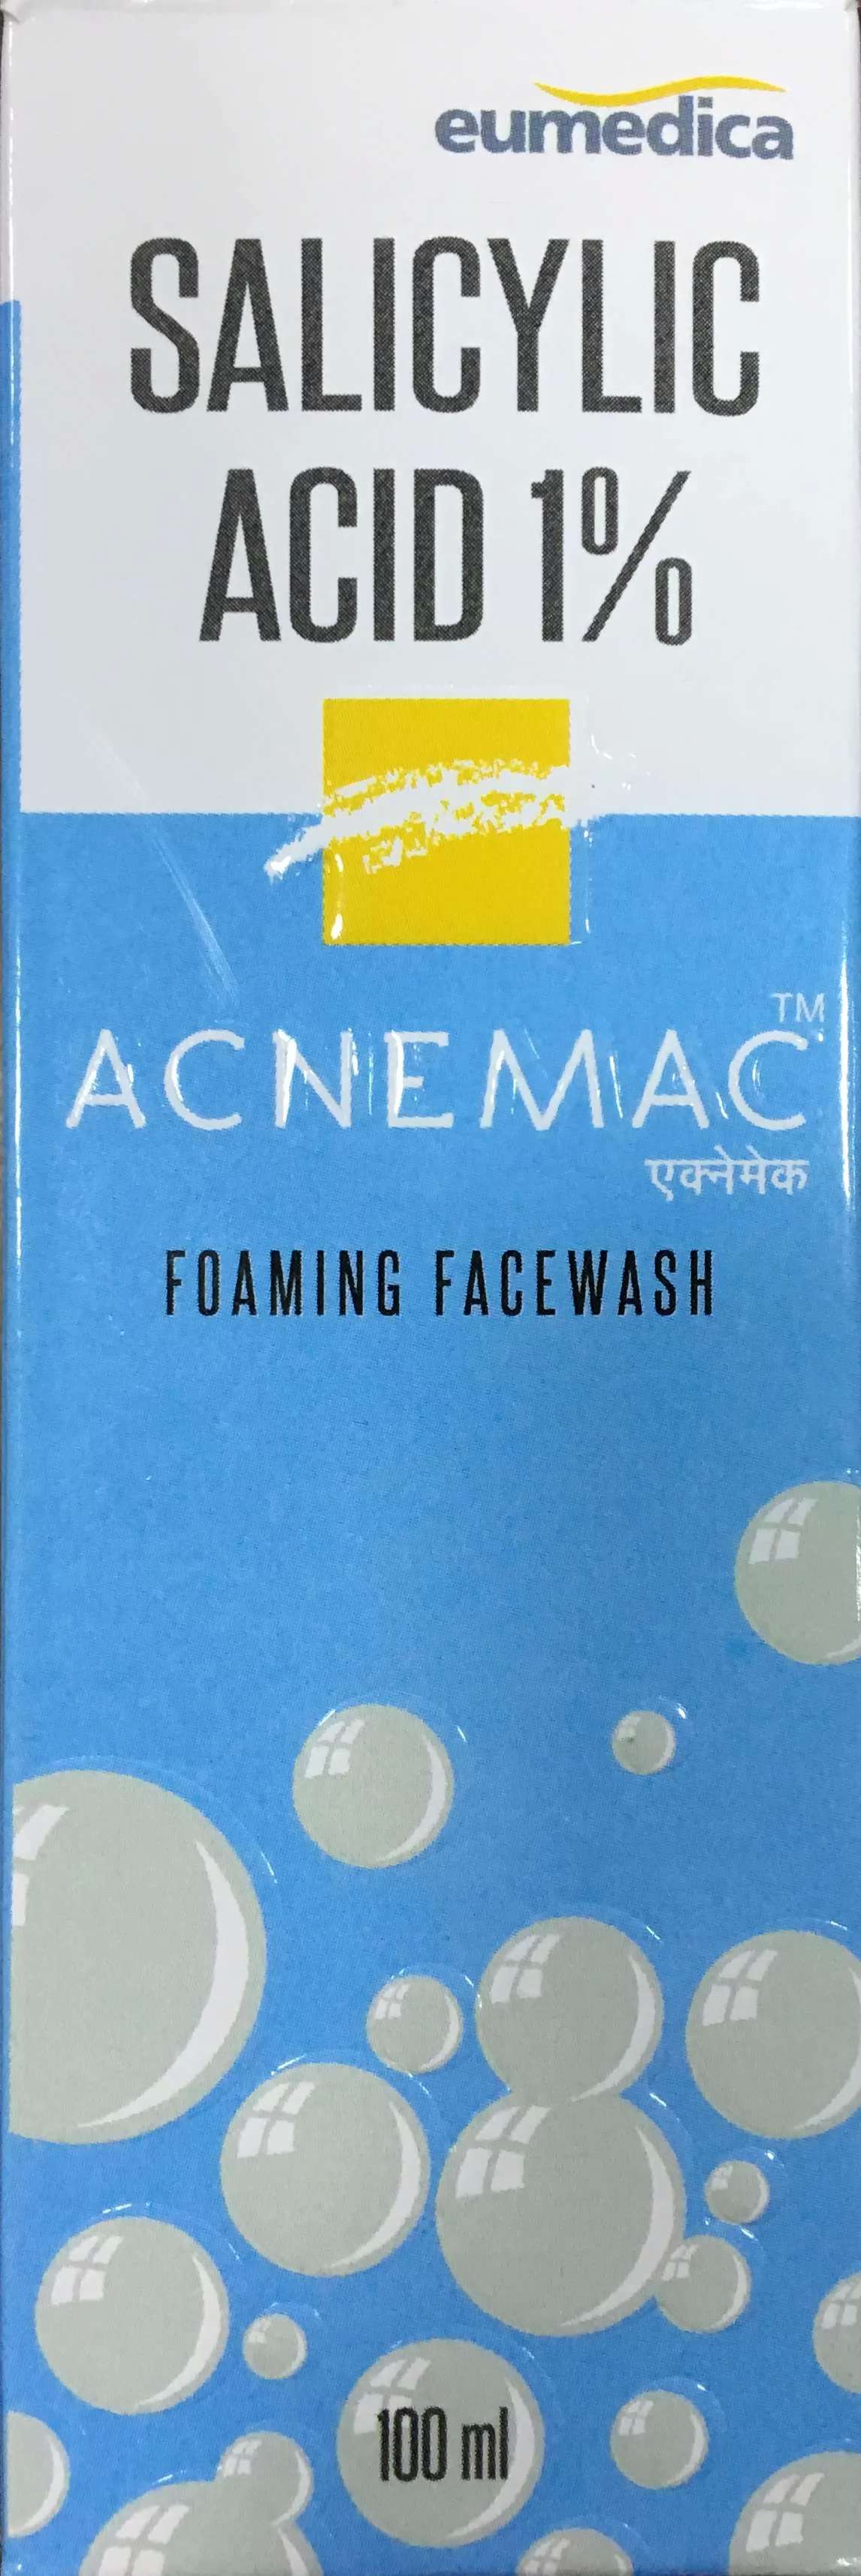 ACNEMAC 1% FOAMING FACEWASH